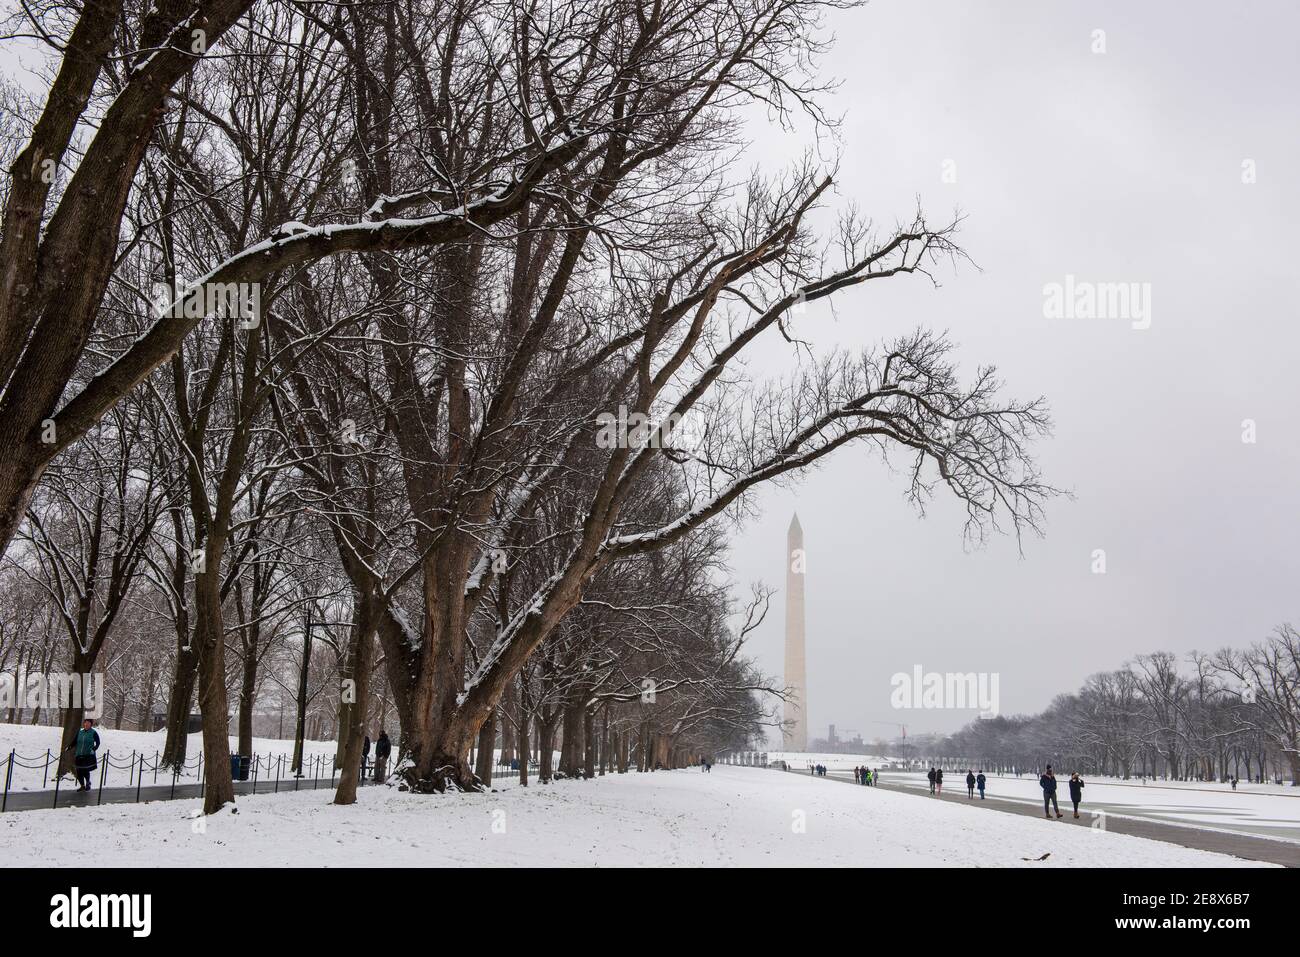 Ein winterlicher Blick auf das Washington Monument und den reflektierenden Pool während eines verschneiten Tages in Washington, D.C. Stockfoto